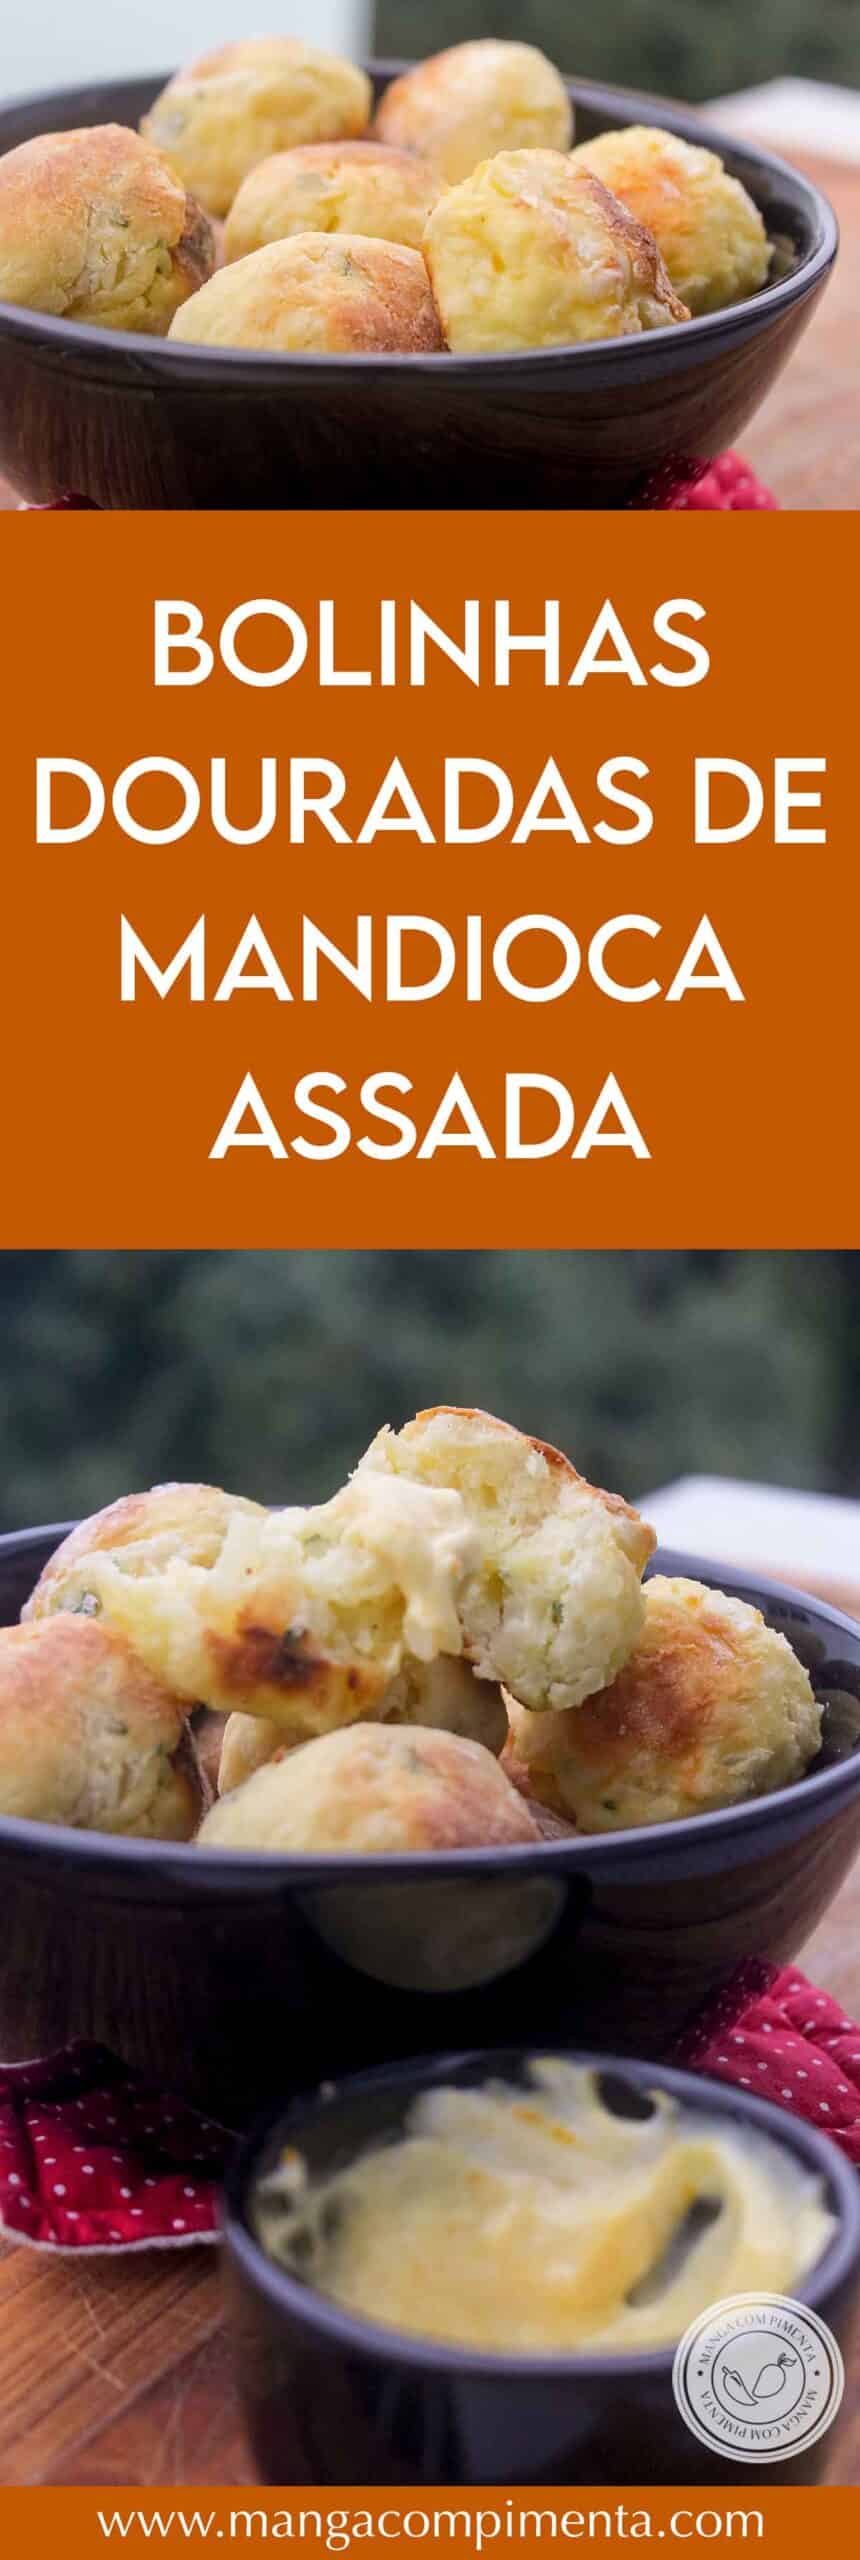 Receita de Bolinhas Douradas de Mandioca Assada - um petisco que não é frito, perfeito para petiscar ou servir junto com uma refeição leve.